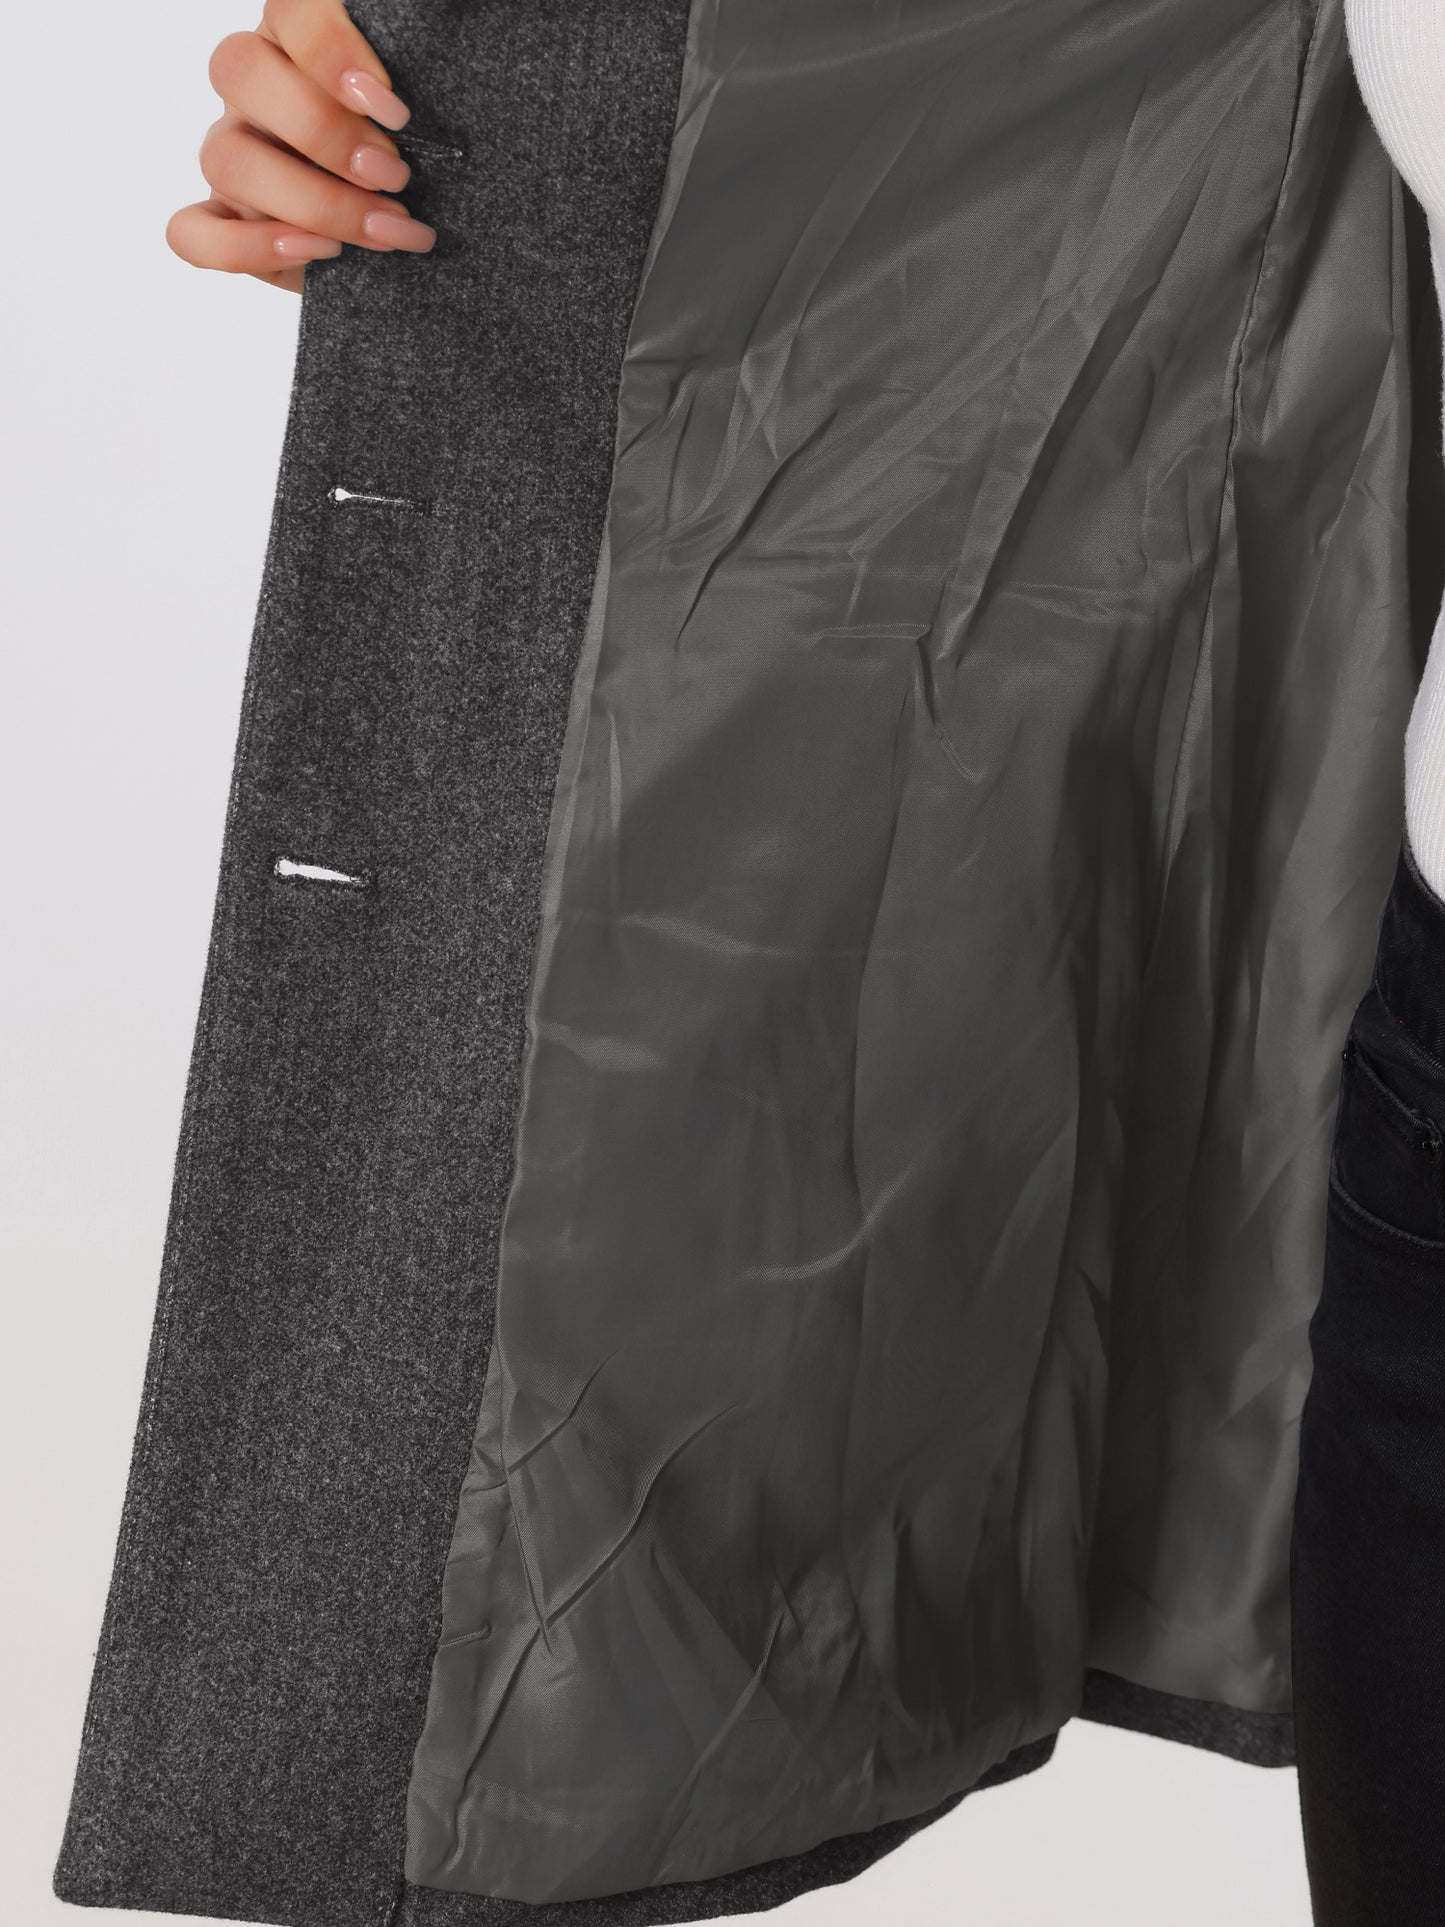 Allegra K Notched Lapel Single Breasted Outwear Winter Coat Dark Grey